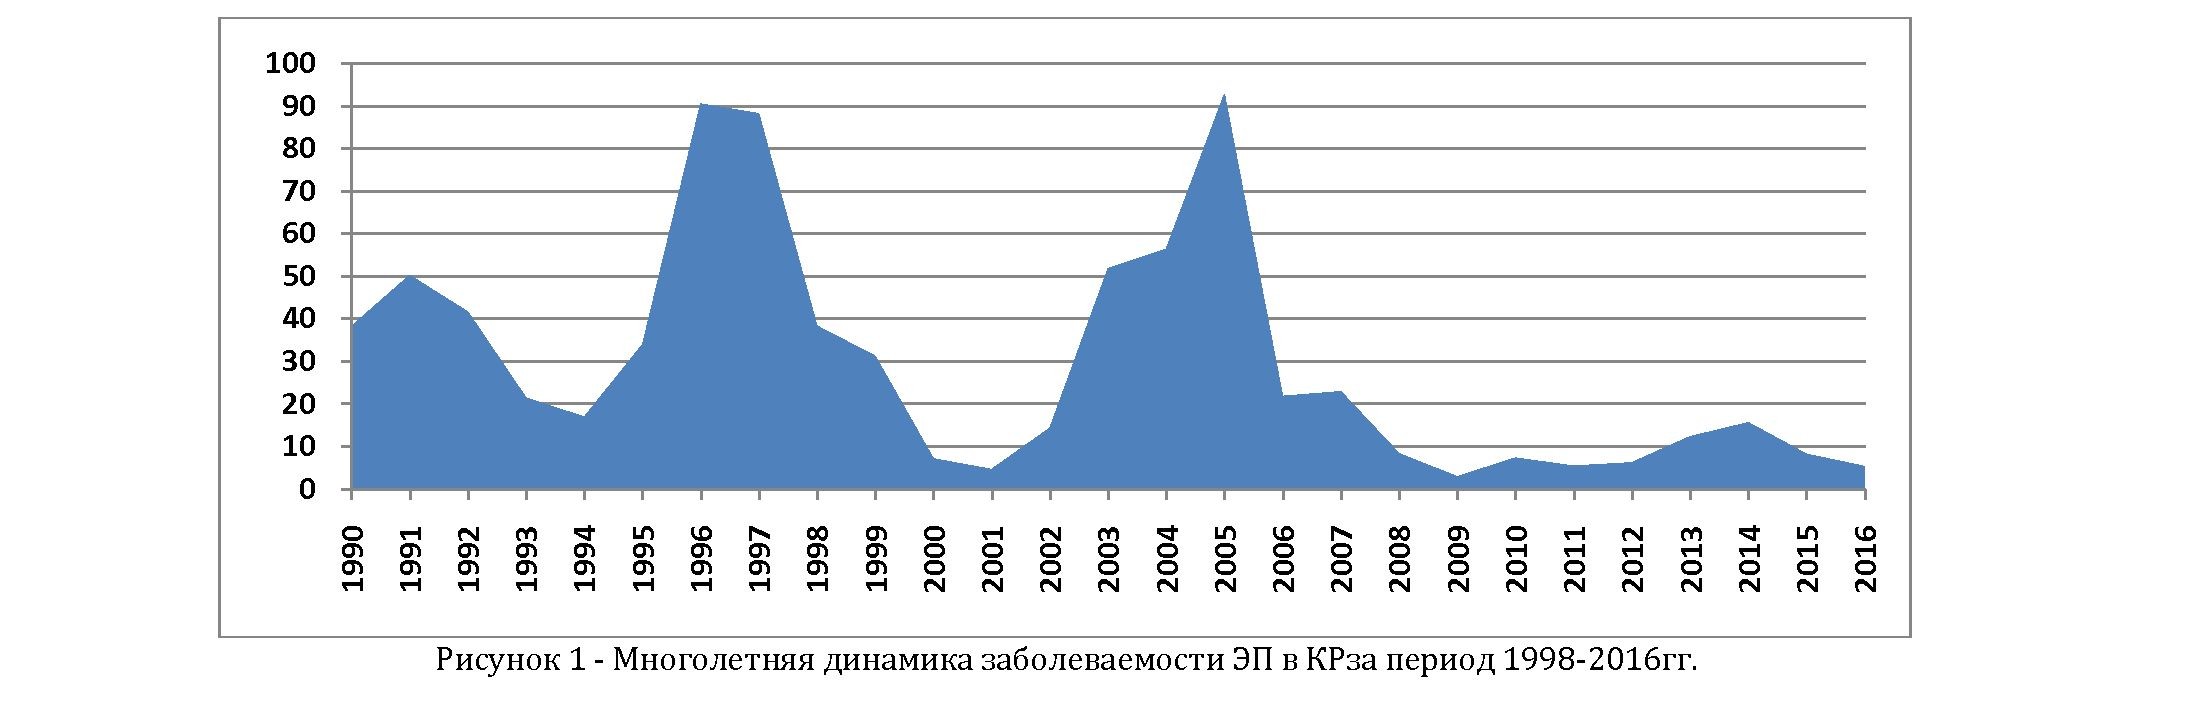 Заболеваемость эпидемическим паротитом в Кыргызской республике до и после внедрения второй дозы иммунизации